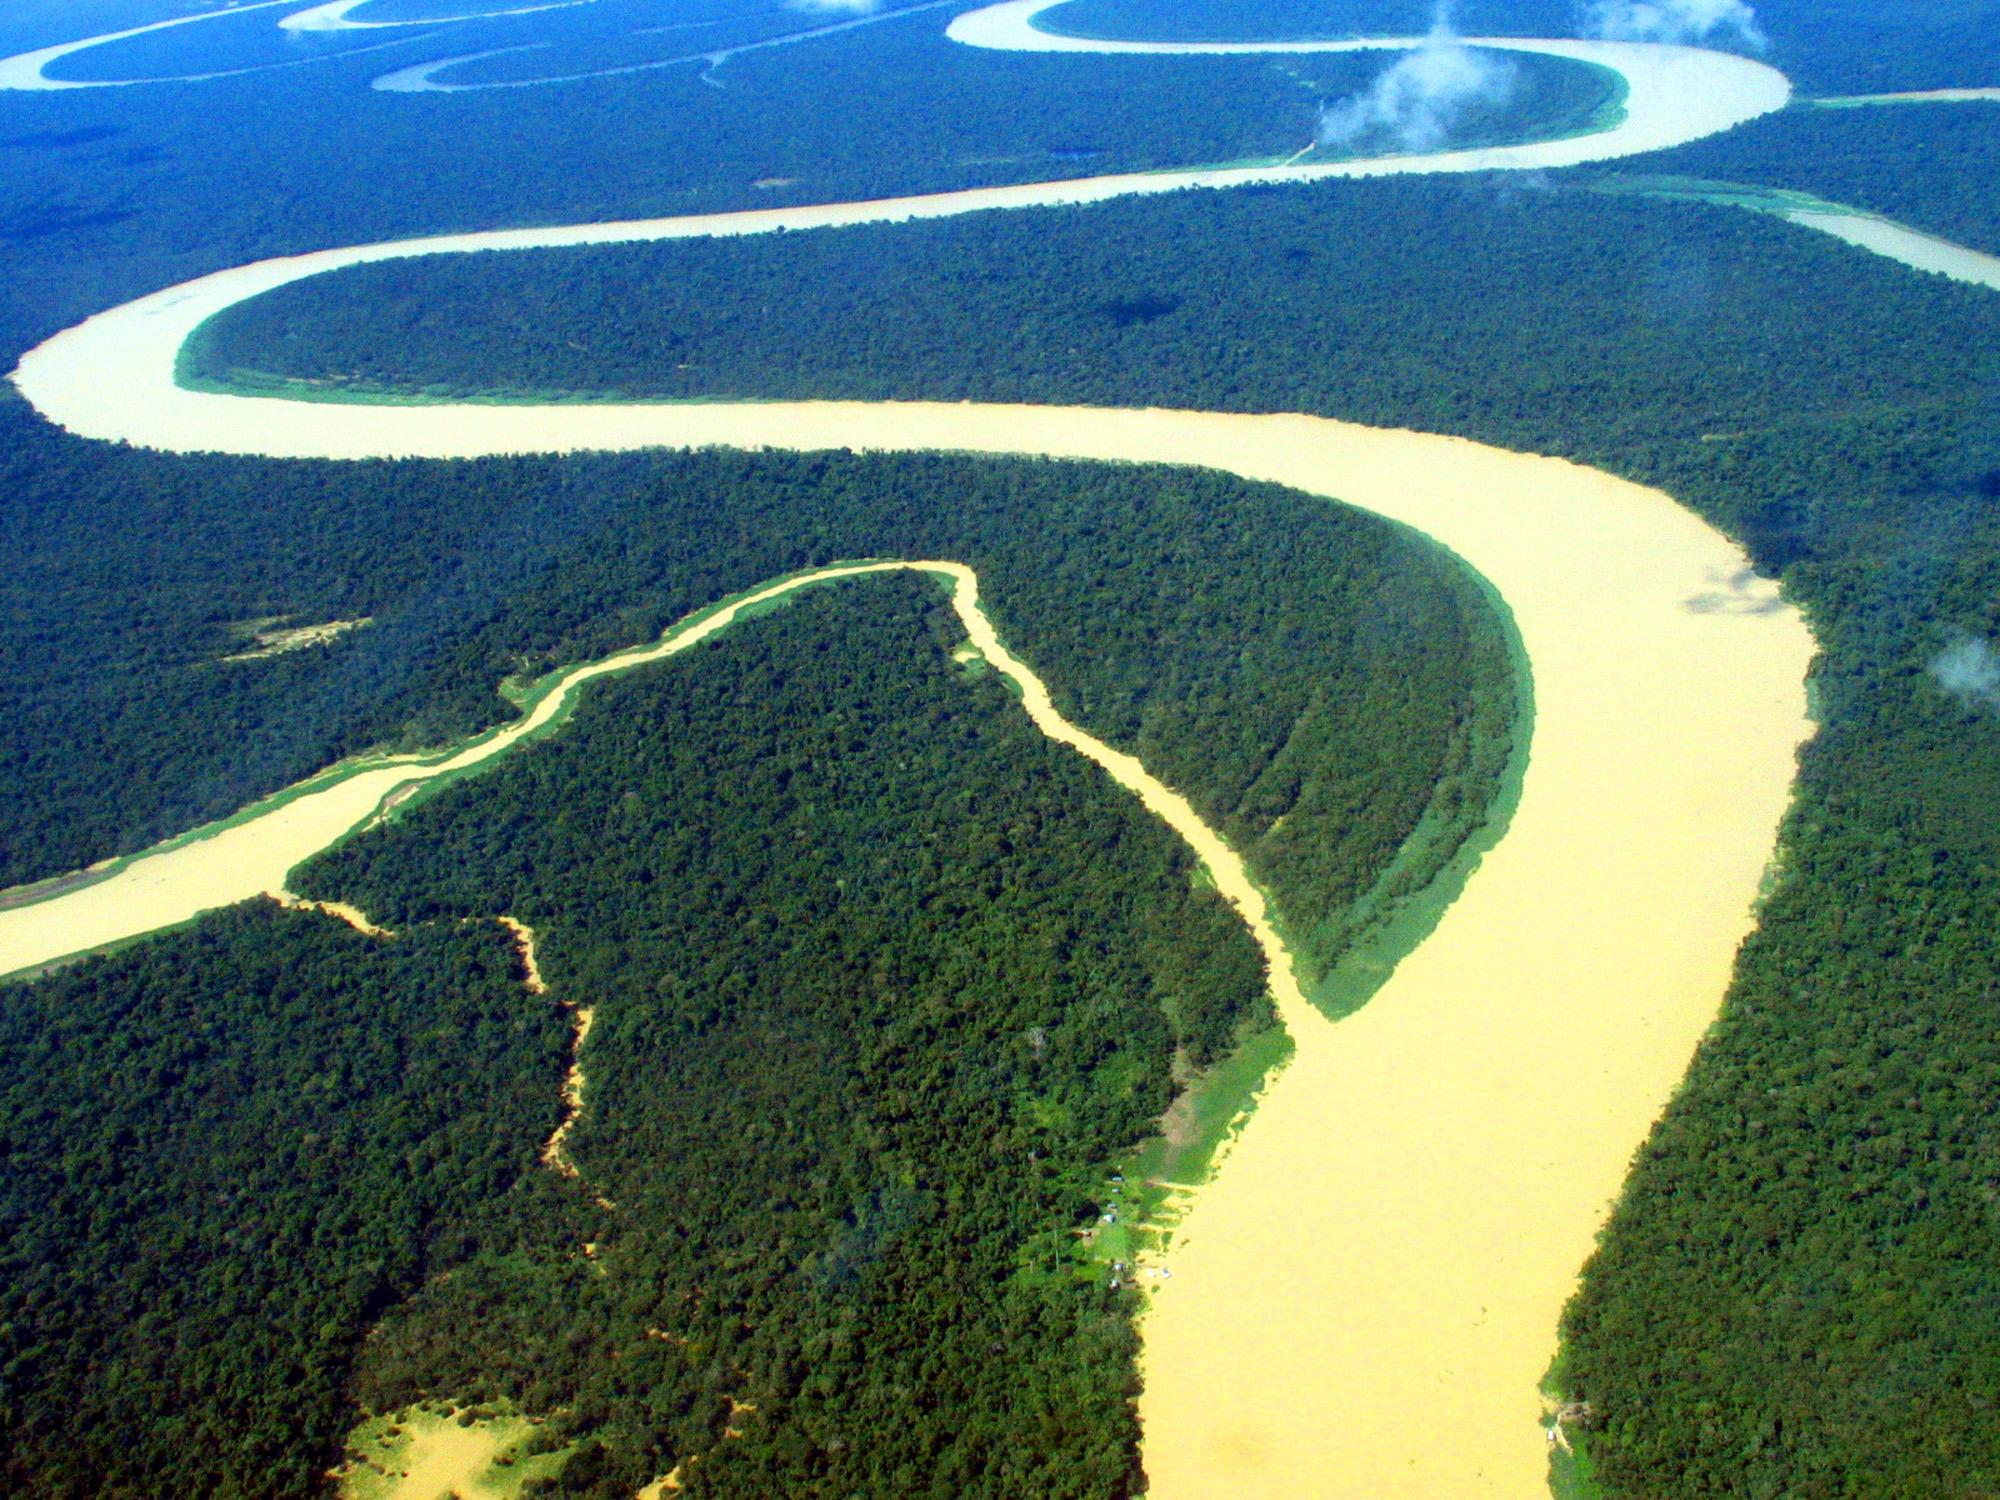 Самая полноводная река. Амазонка и Ориноко. Бразилия Амазонская низменность. Река Ориноко Южная Америка. Река Амазонка — ; река Ориноко — ..